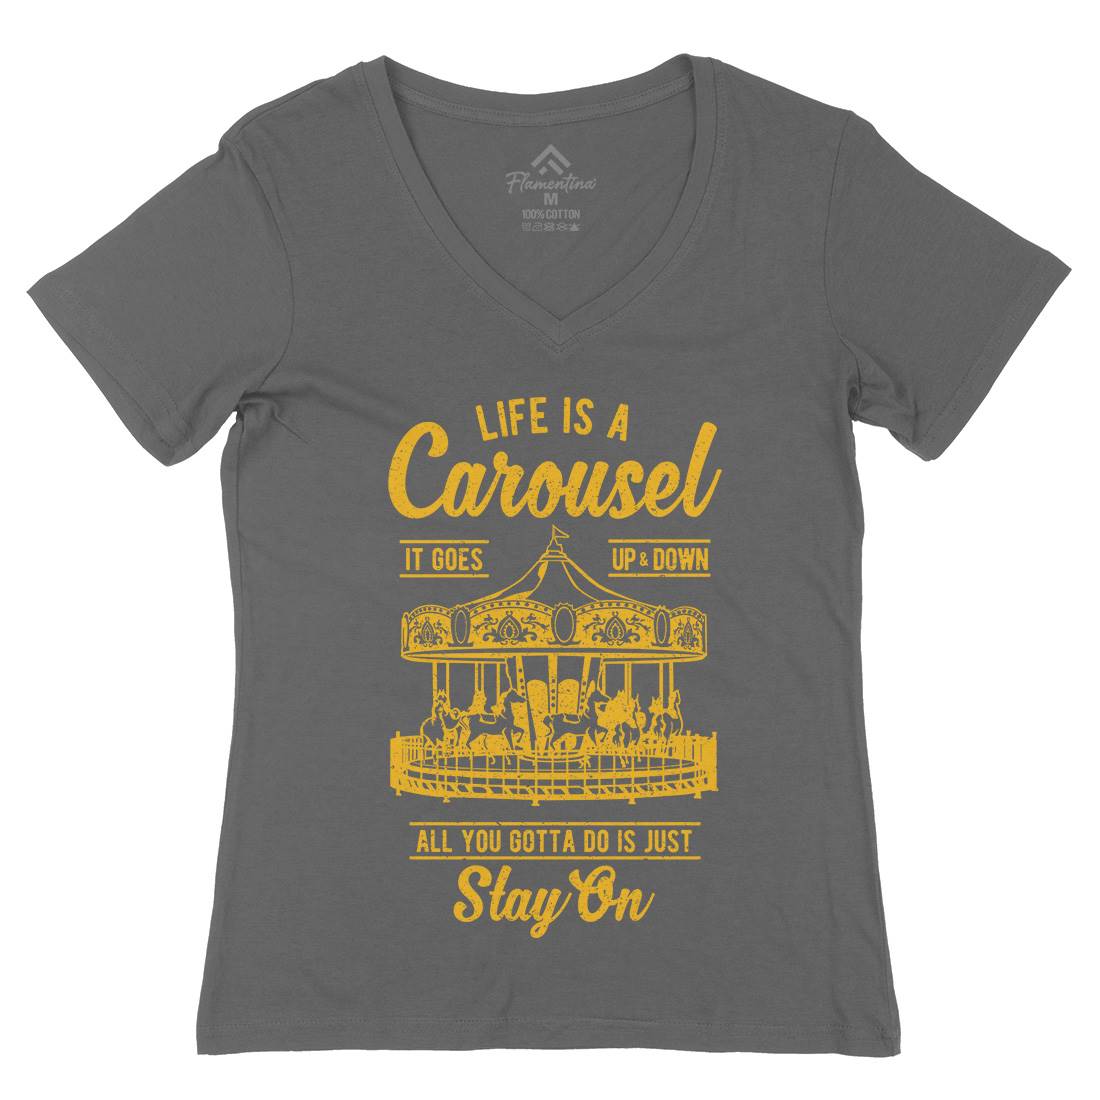 Carousel Womens Organic V-Neck T-Shirt Retro A633